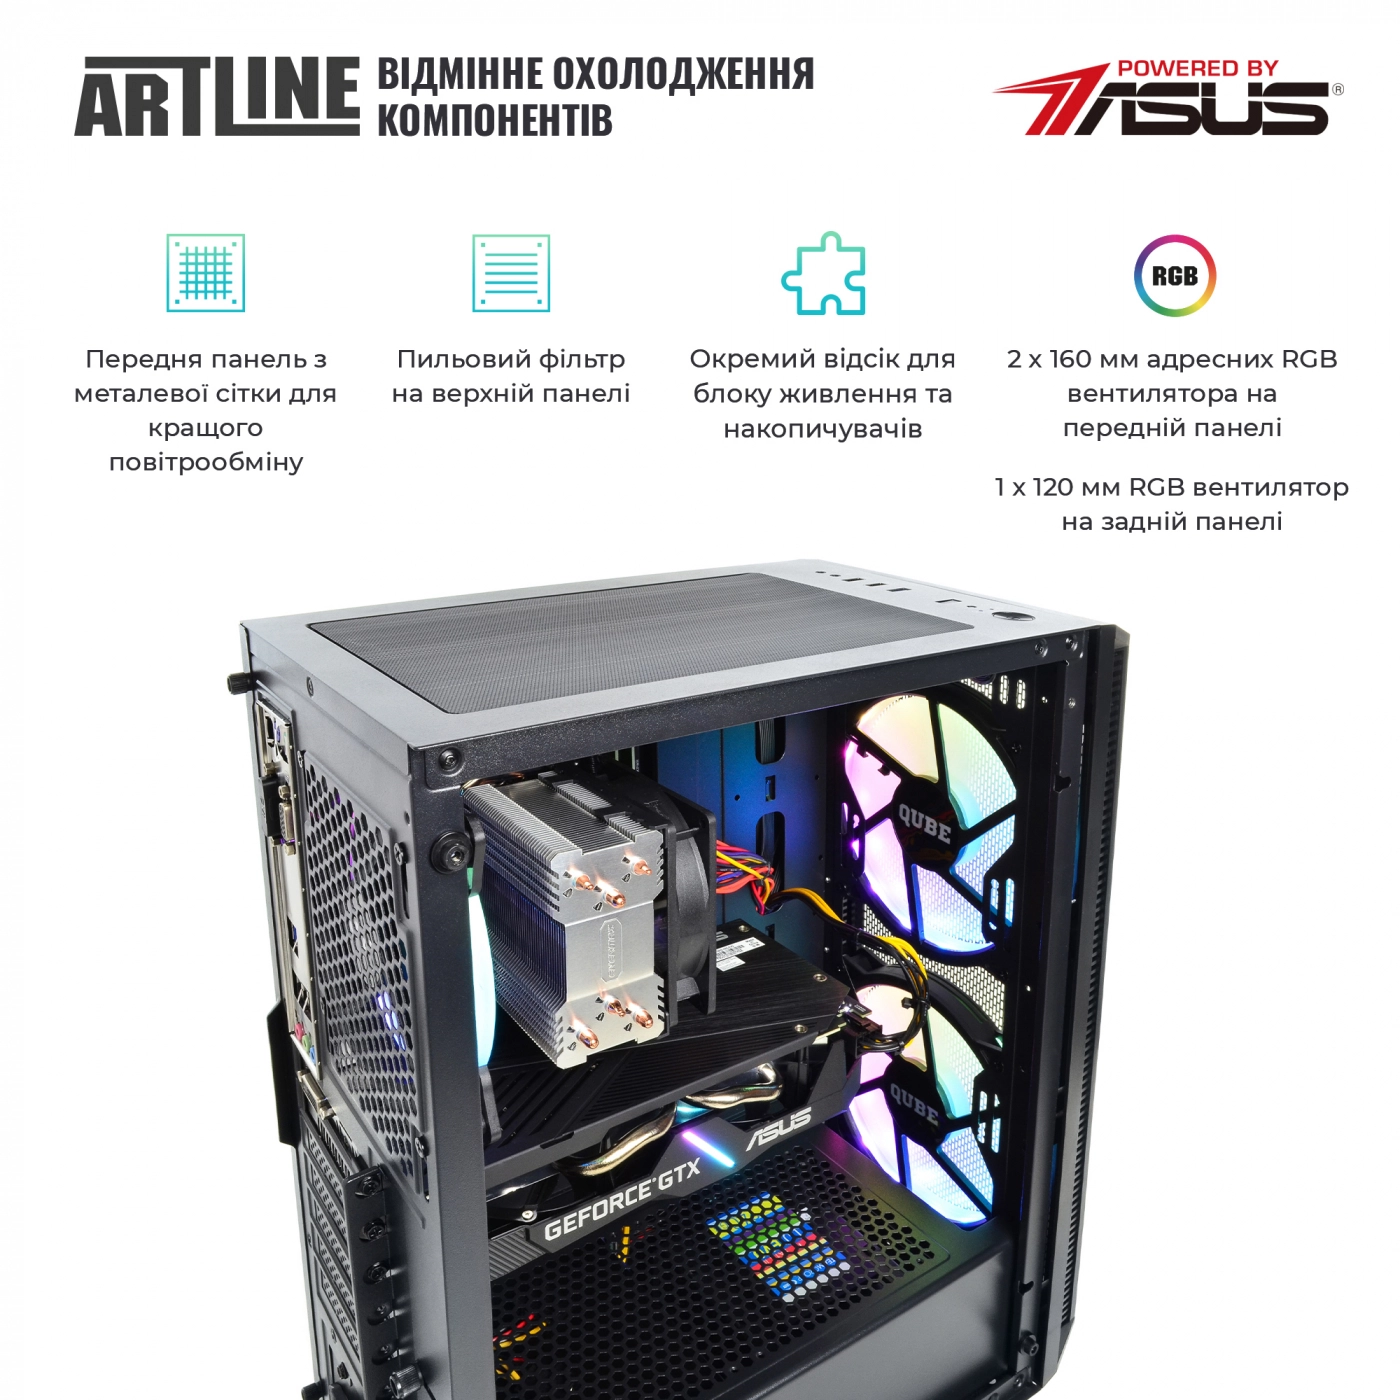 Купить Компьютер ARTLINE Gaming X55v31 - фото 2